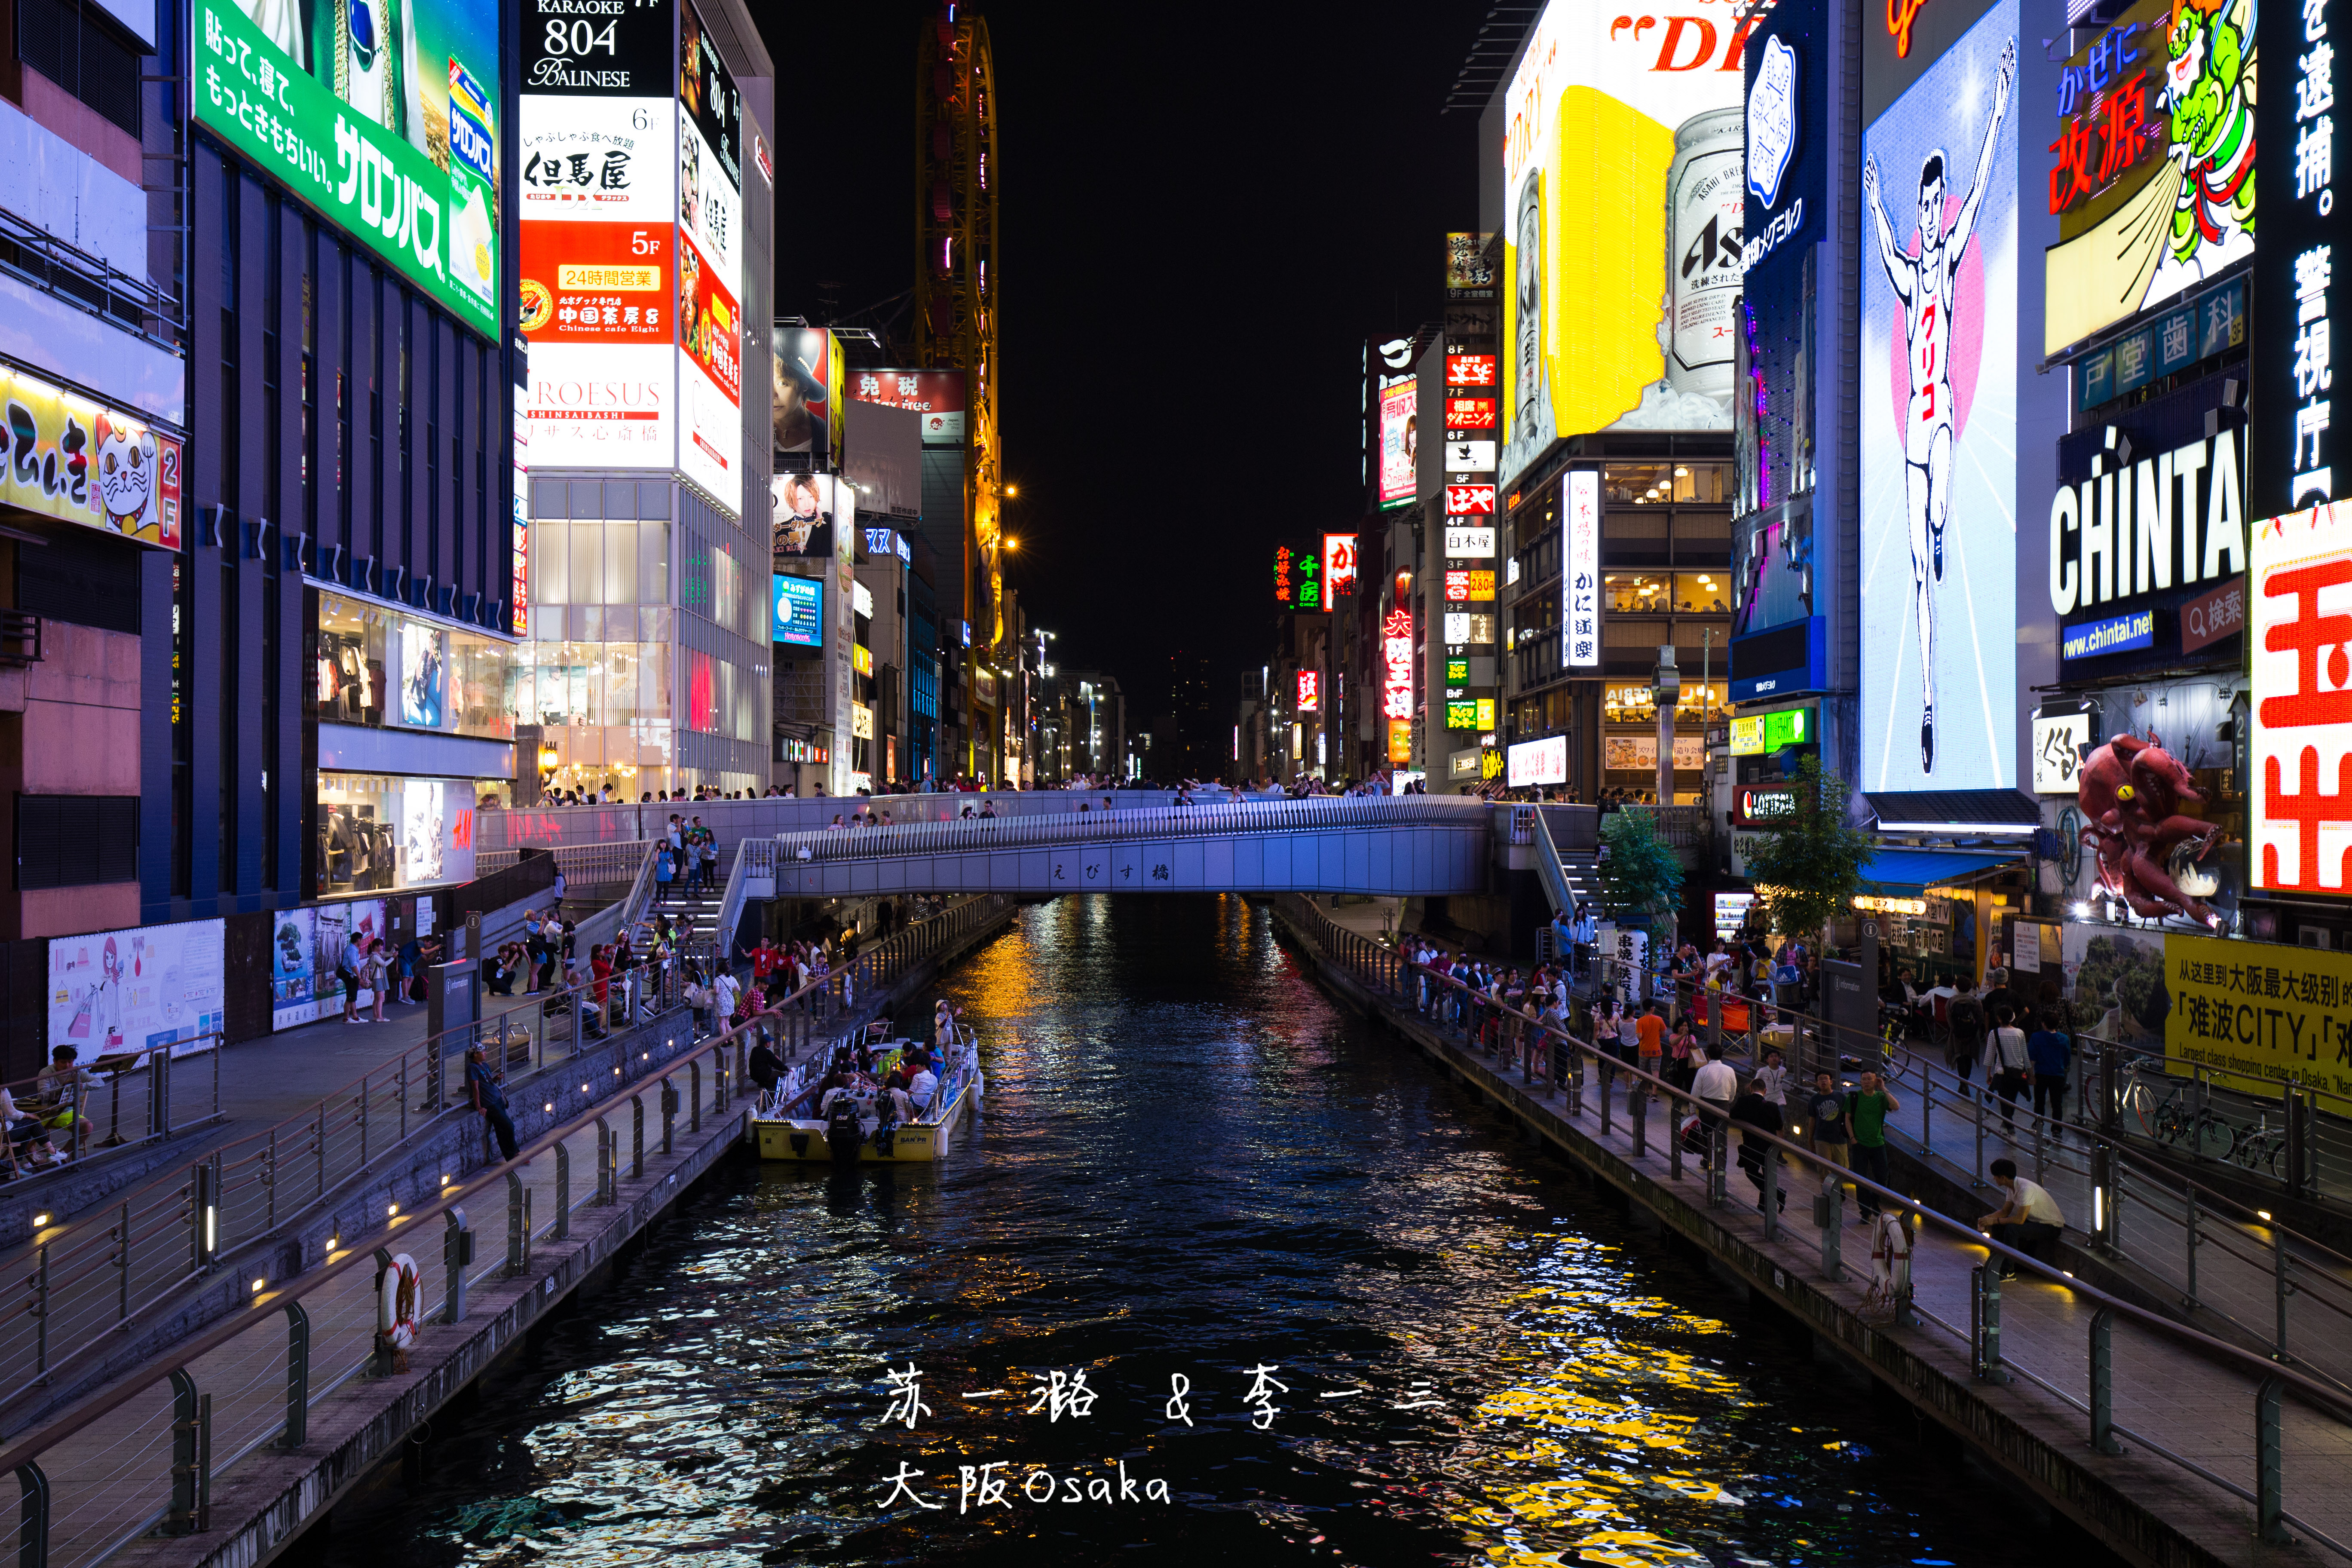 心斋桥shinsaibashi心斋桥是大阪最大的购物区,整条心斋桥筋商业街全